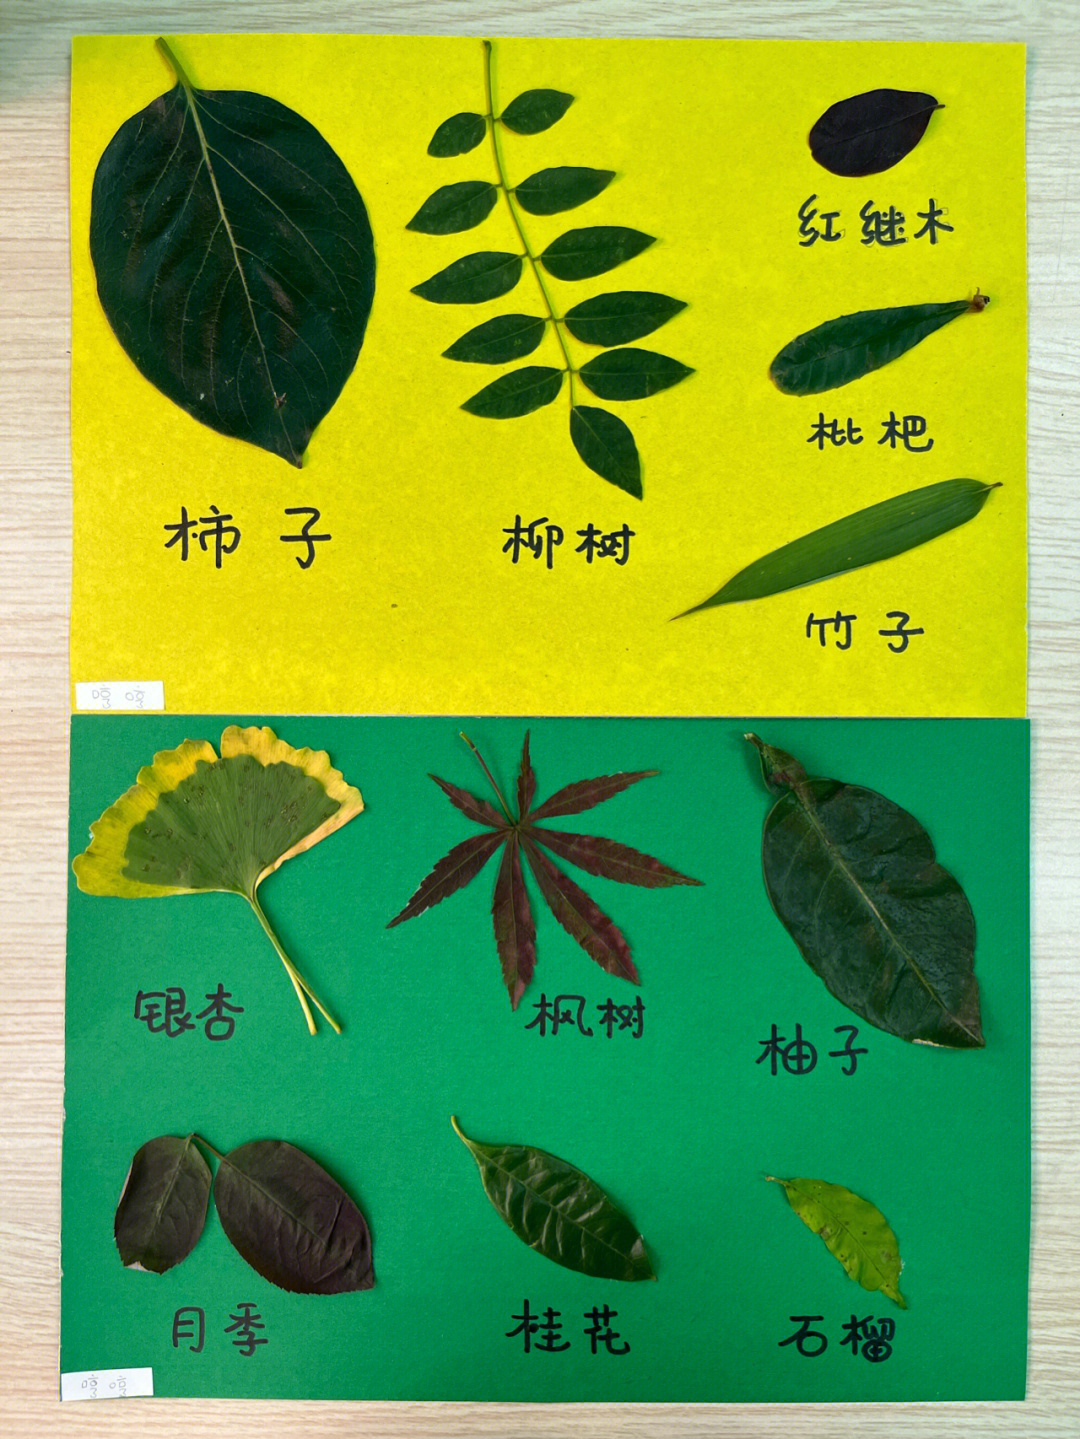 各种树叶的介绍图片